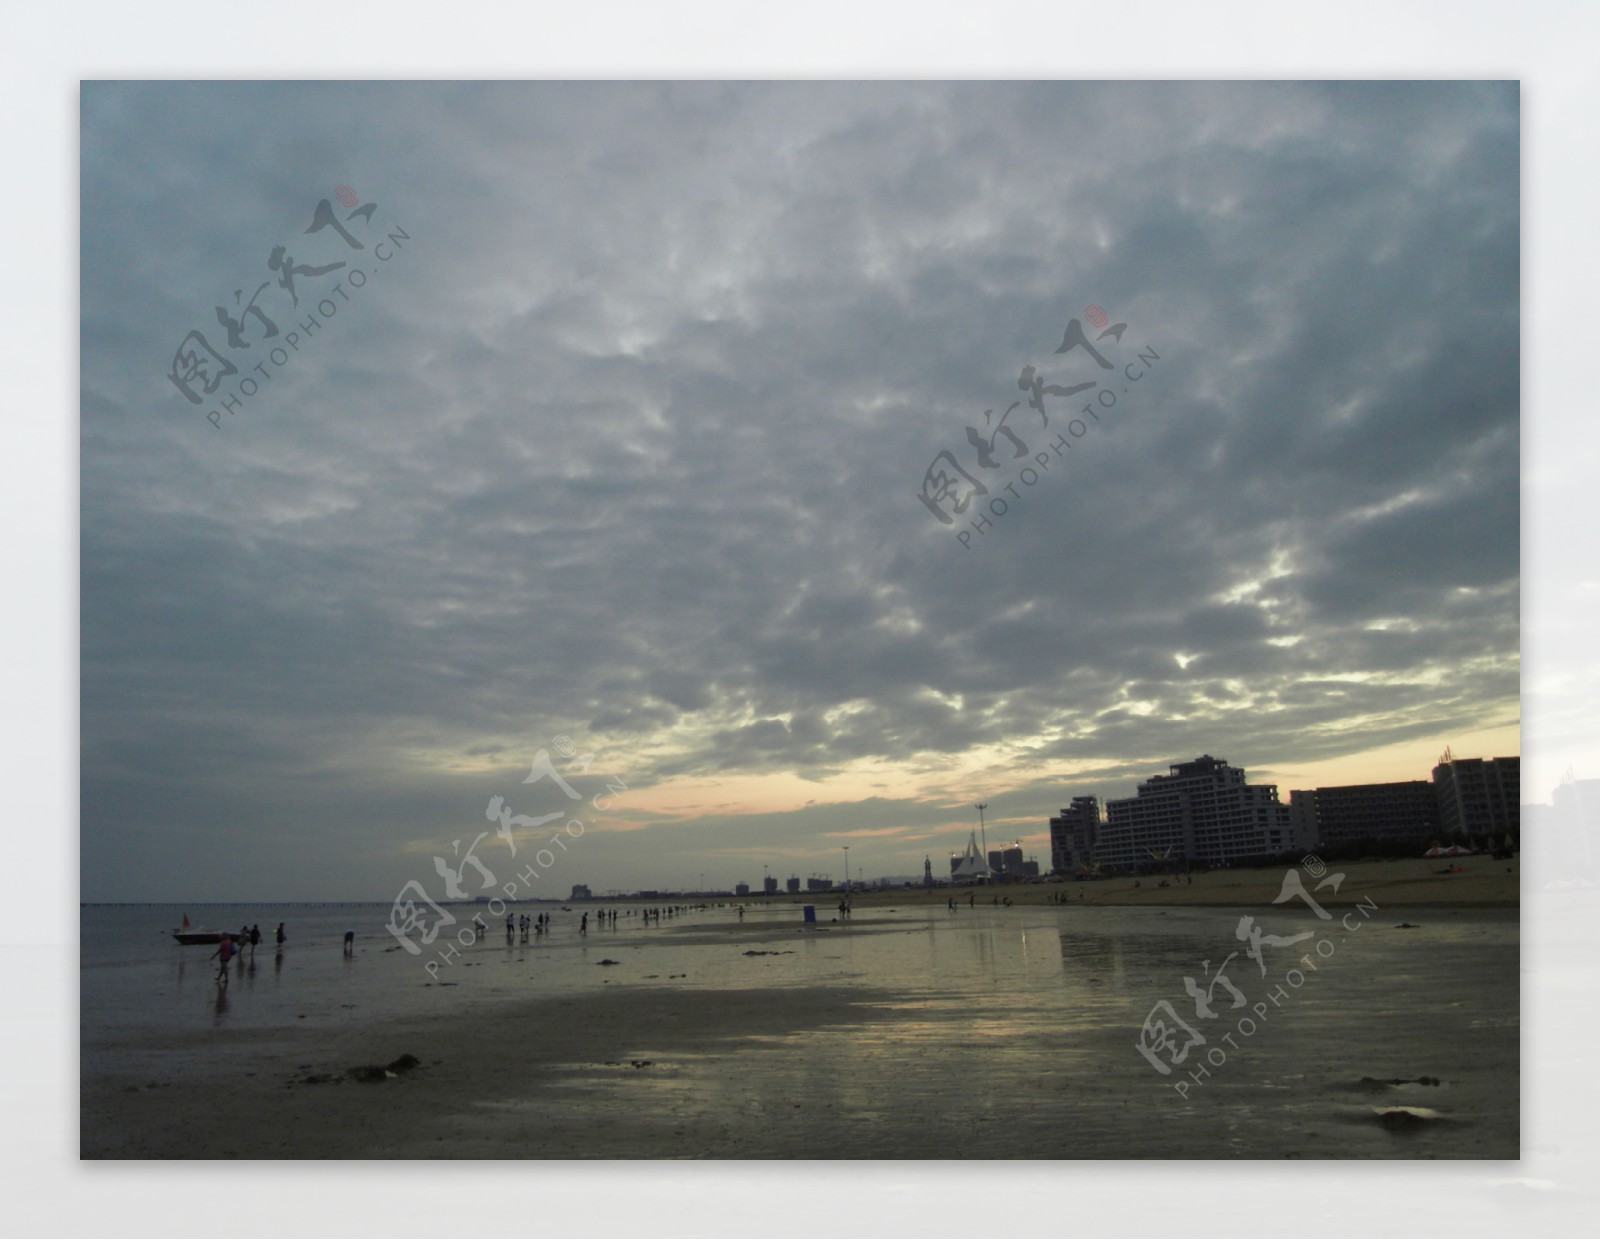 Fotos gratis : Nublado nubes, rayo de sol, mar, playa, puesta de sol ...